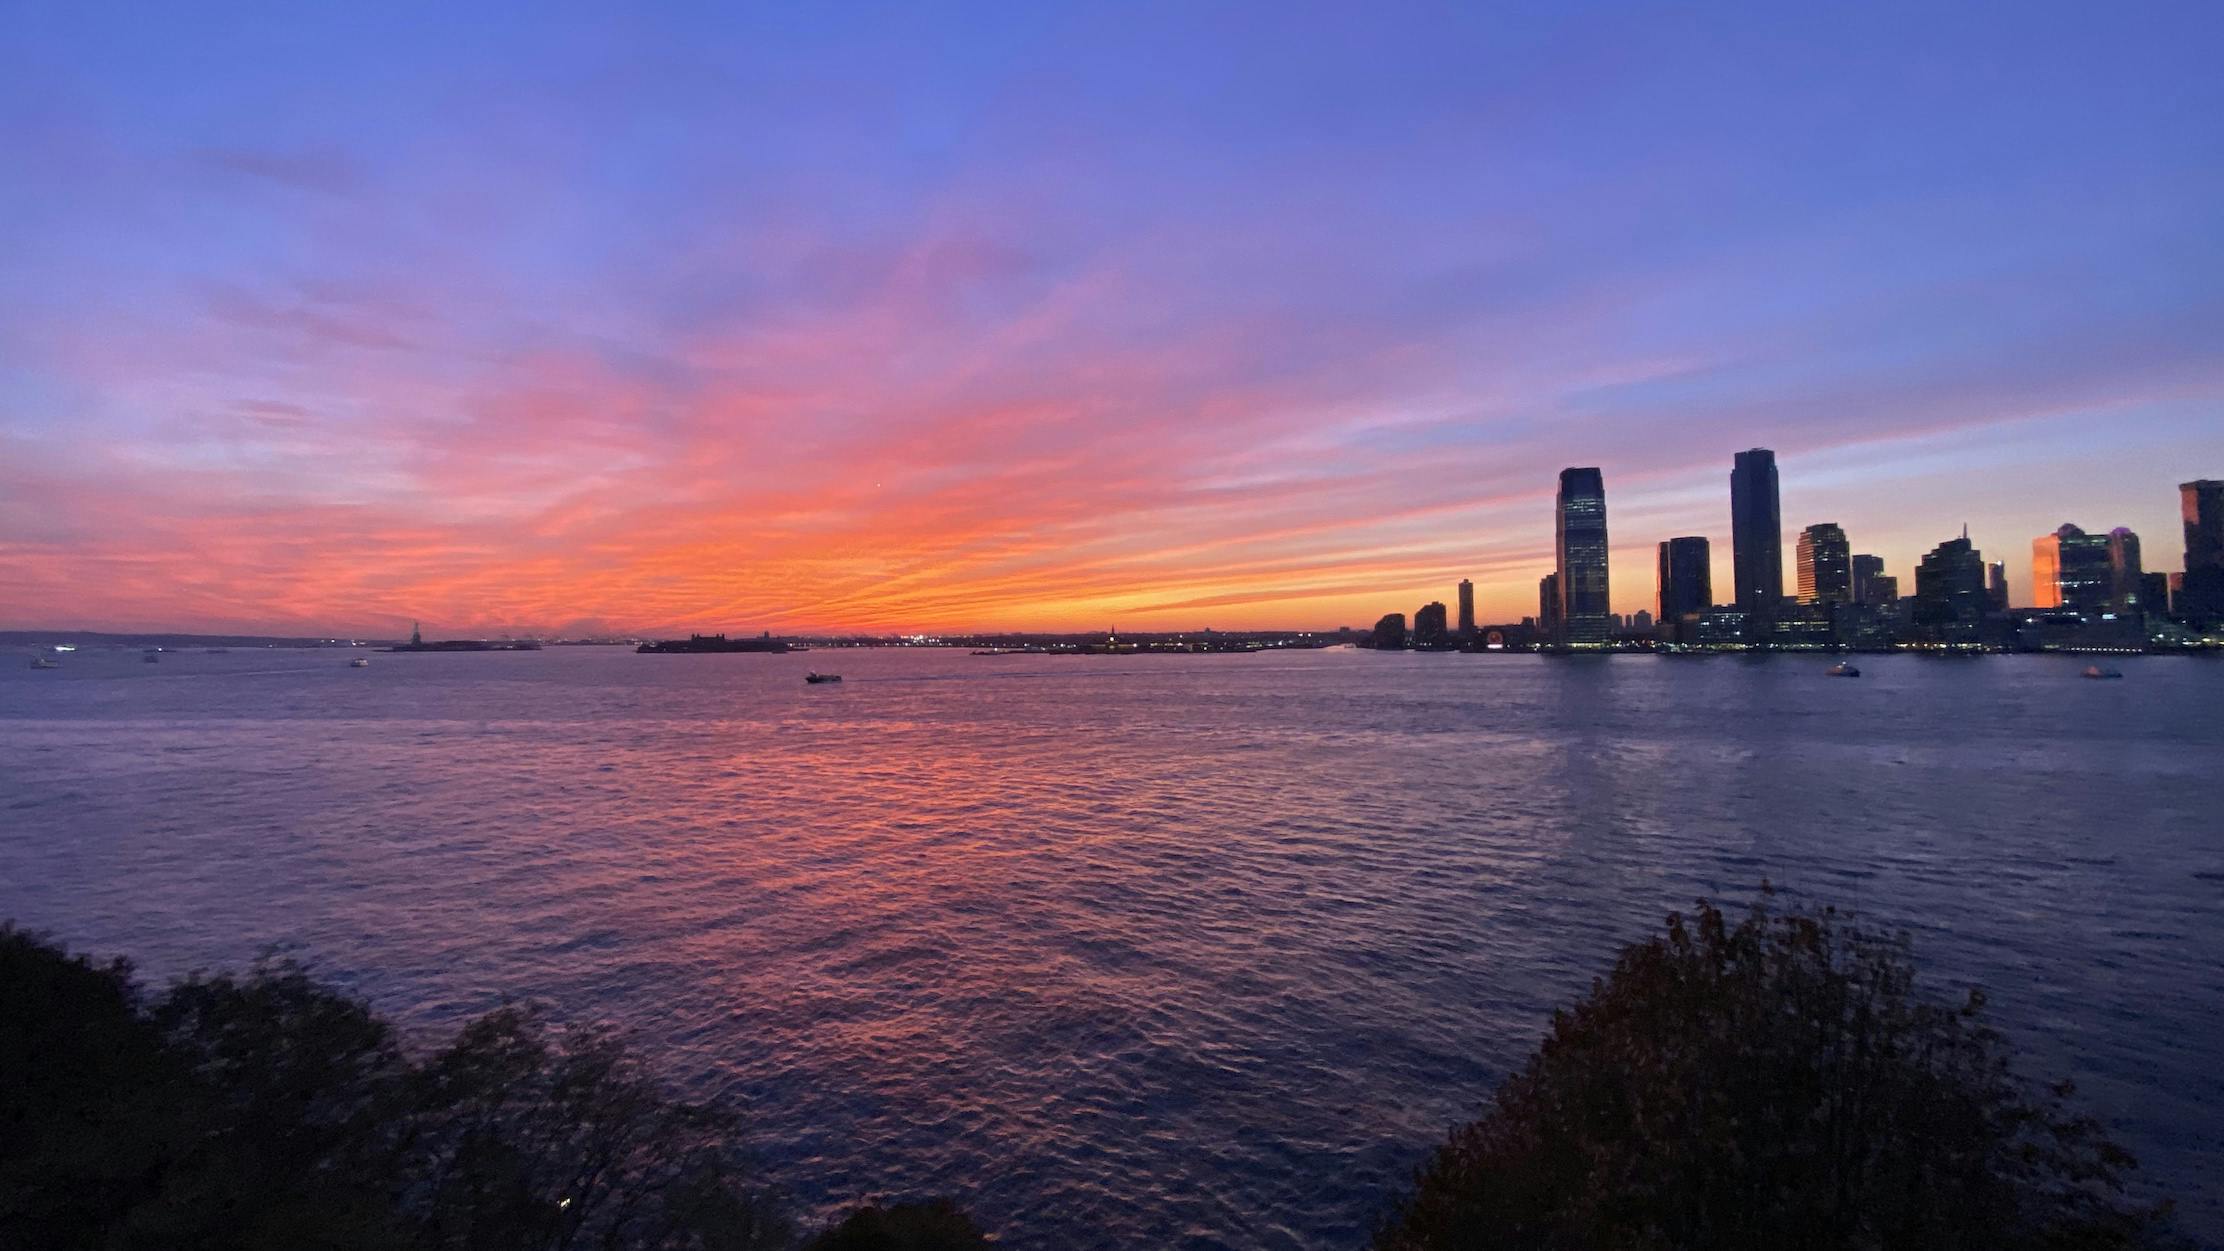 Hudson river/Jersey City at sunset, seen from Battery Park, Manhattan